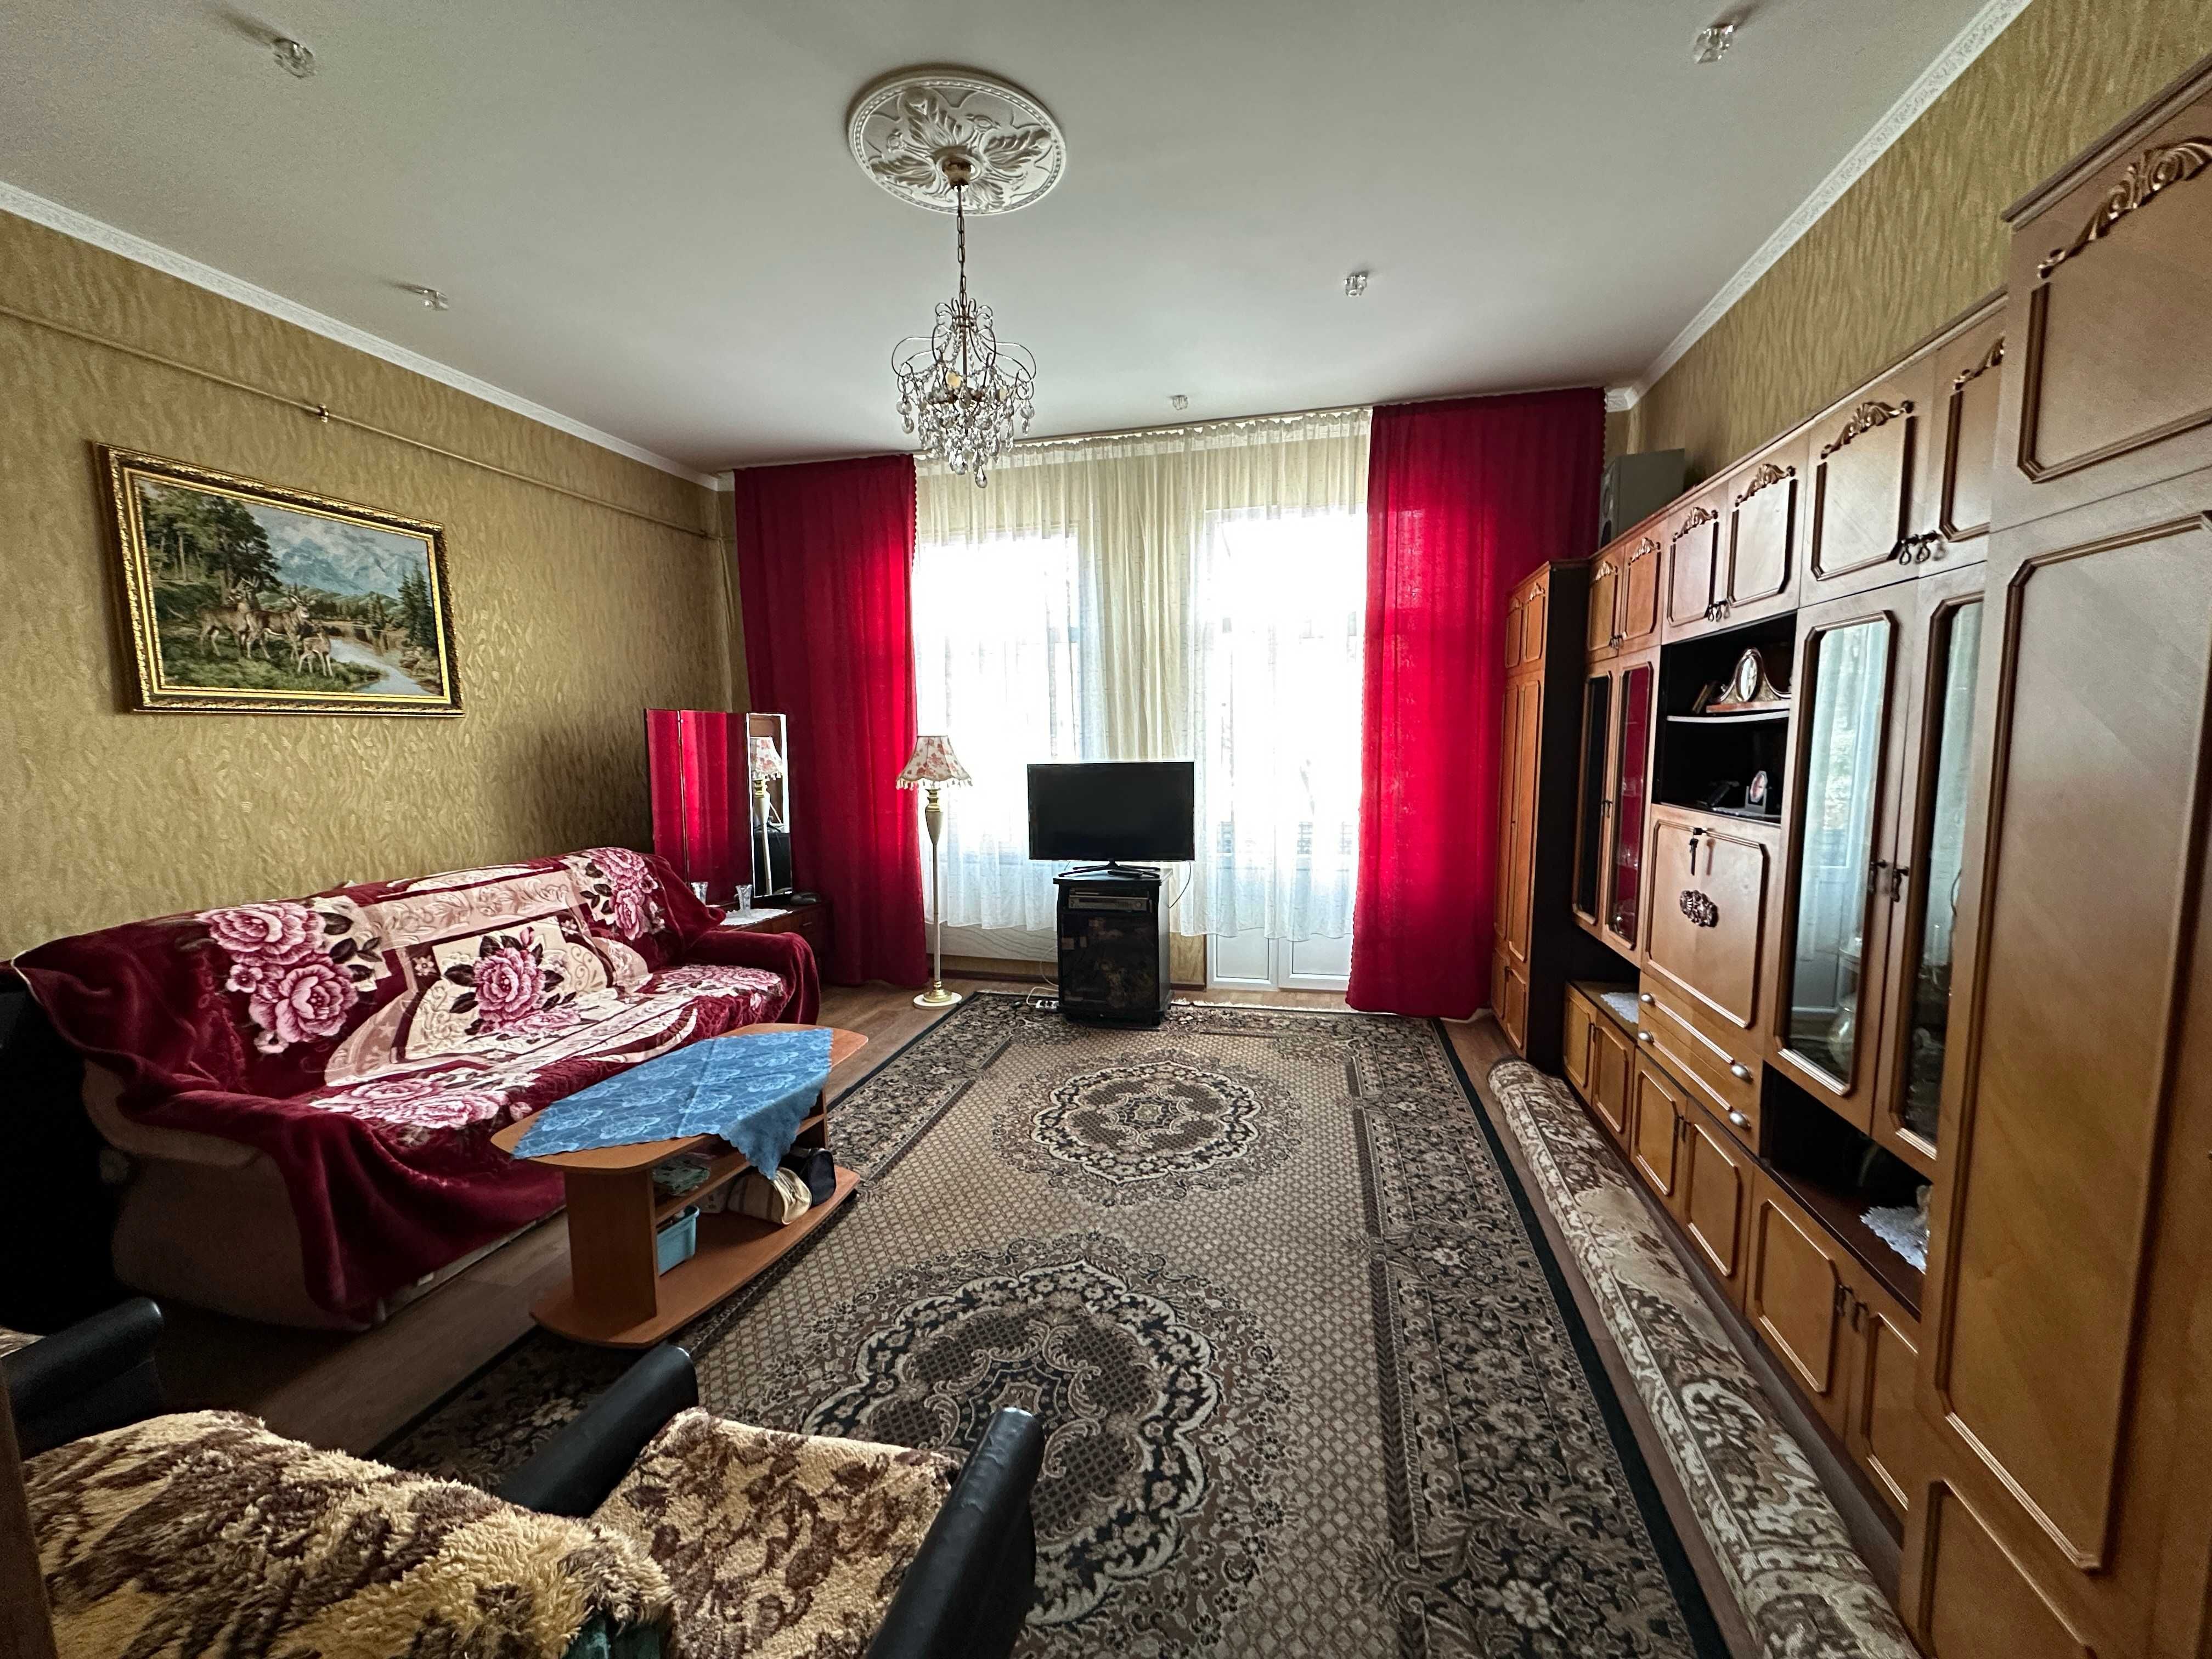 Продаж 2-кімнатної квартири в м.Дрогобич